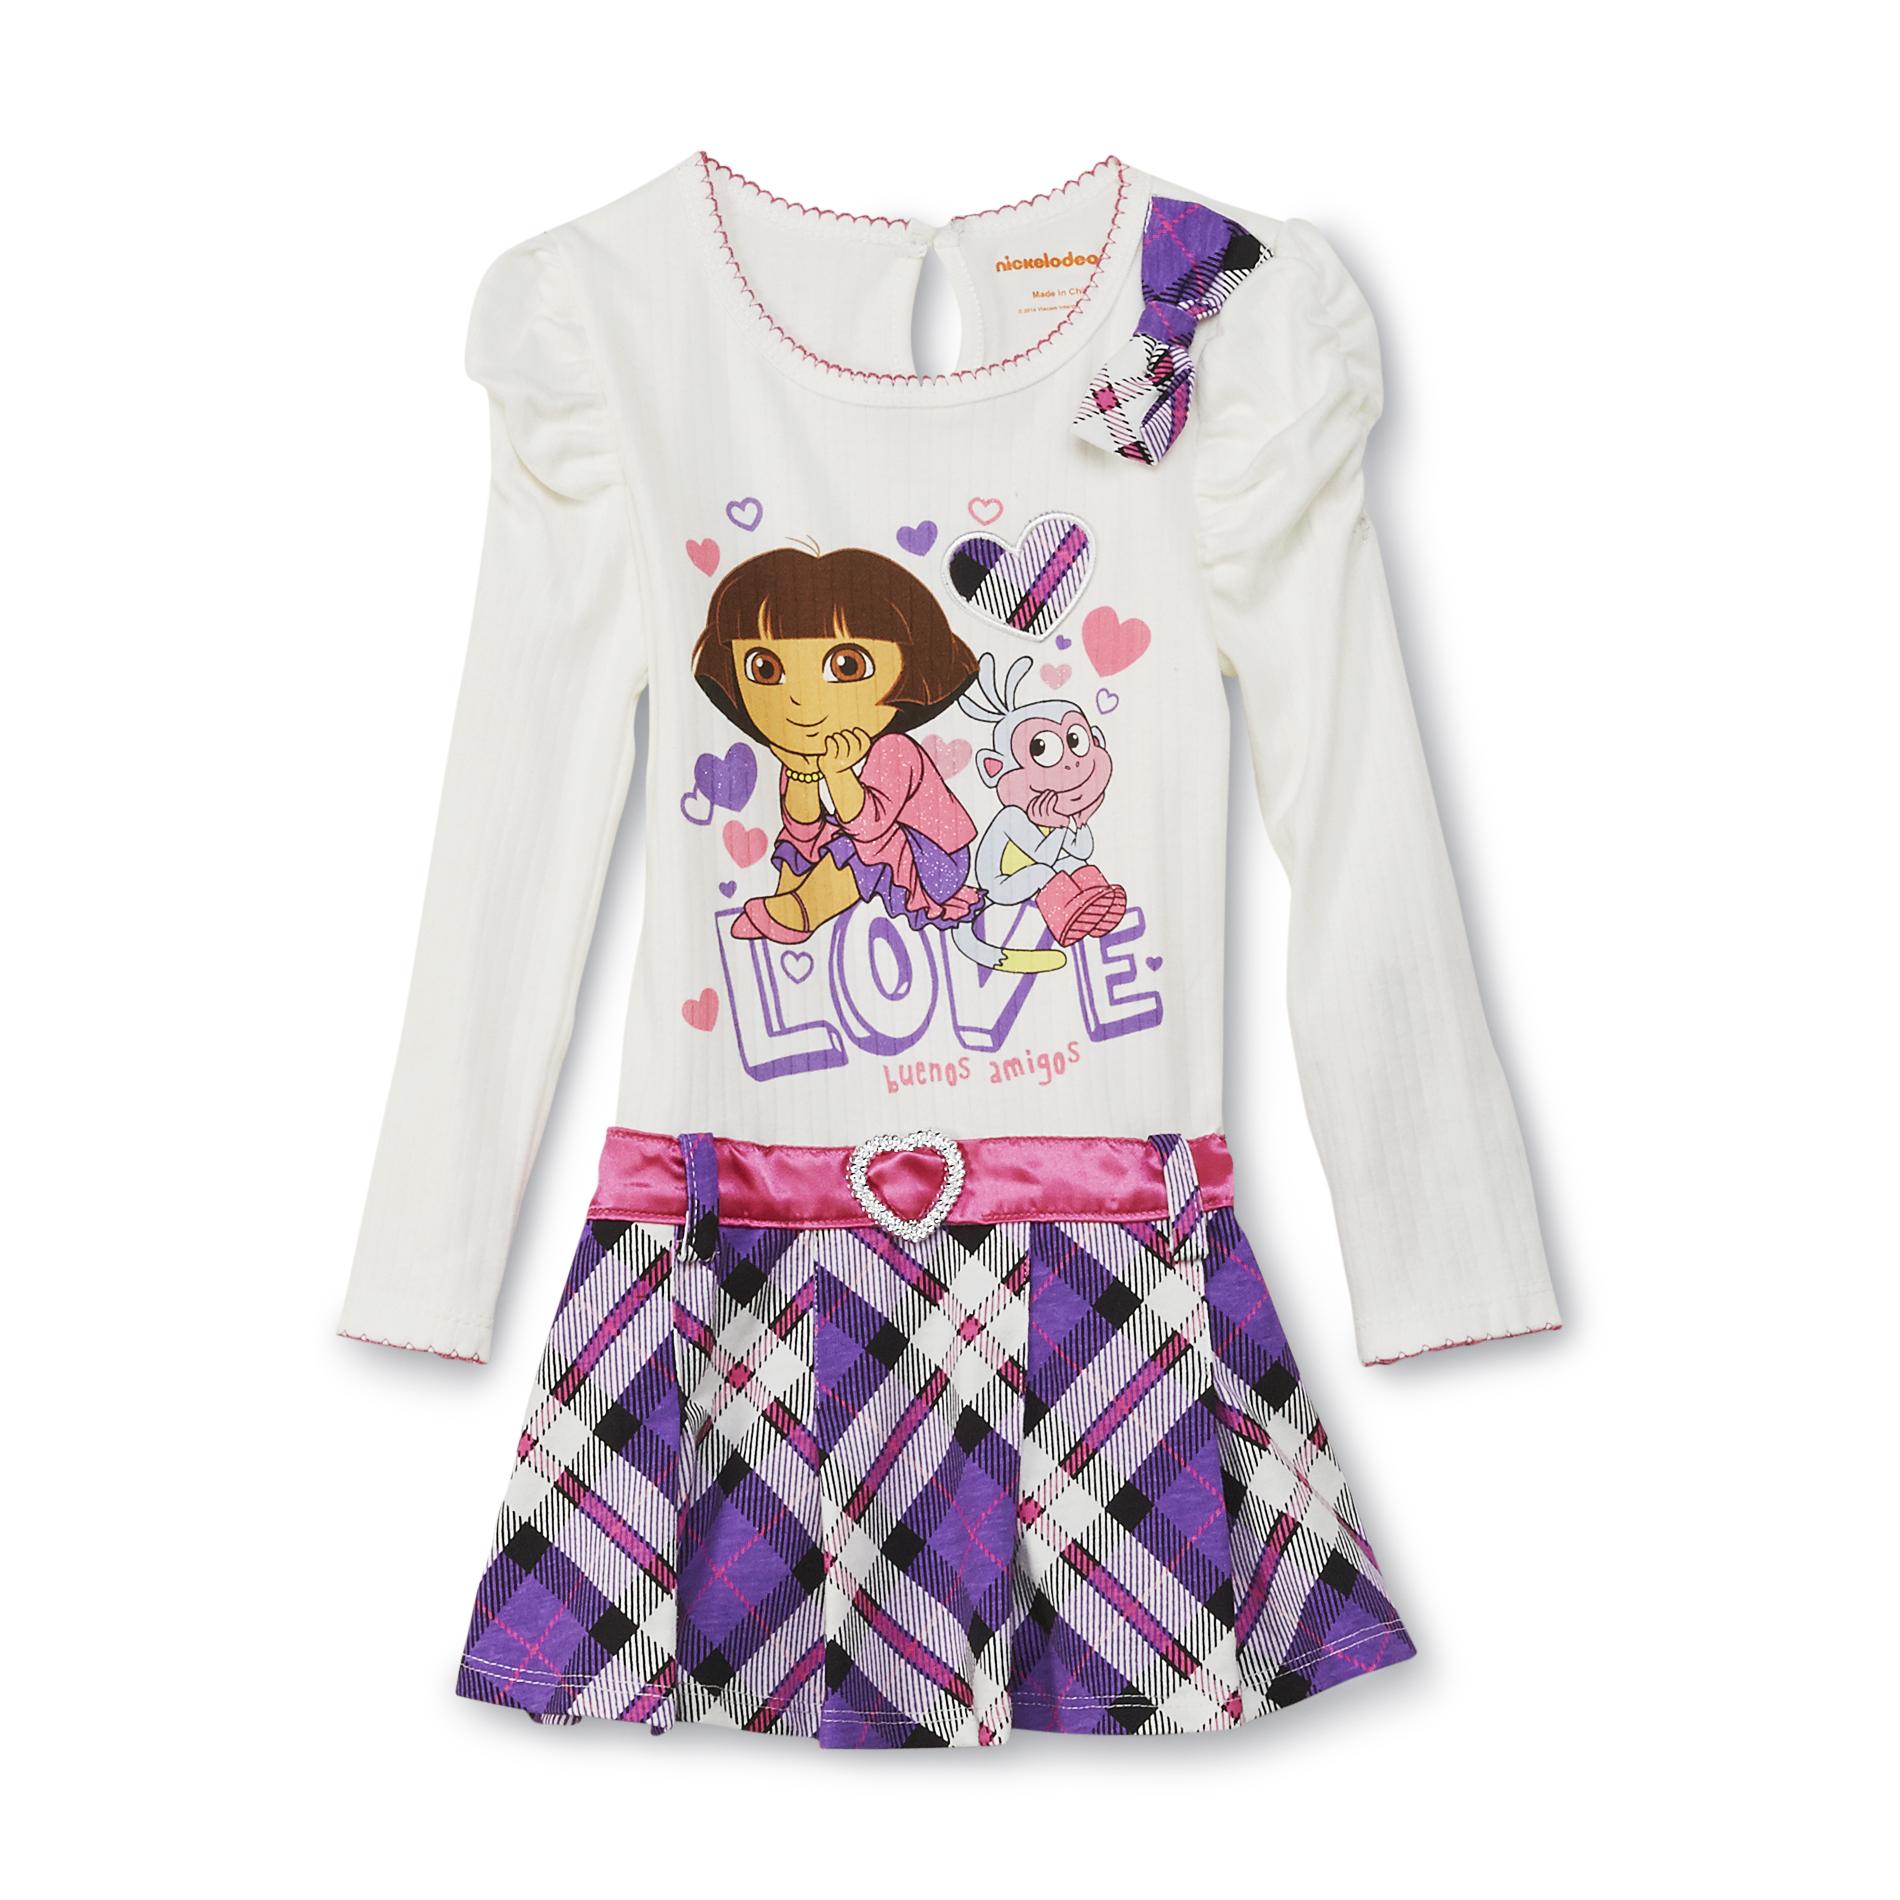 Nickelodeon Dora The Explorer Toddler Girl's Dress - Love